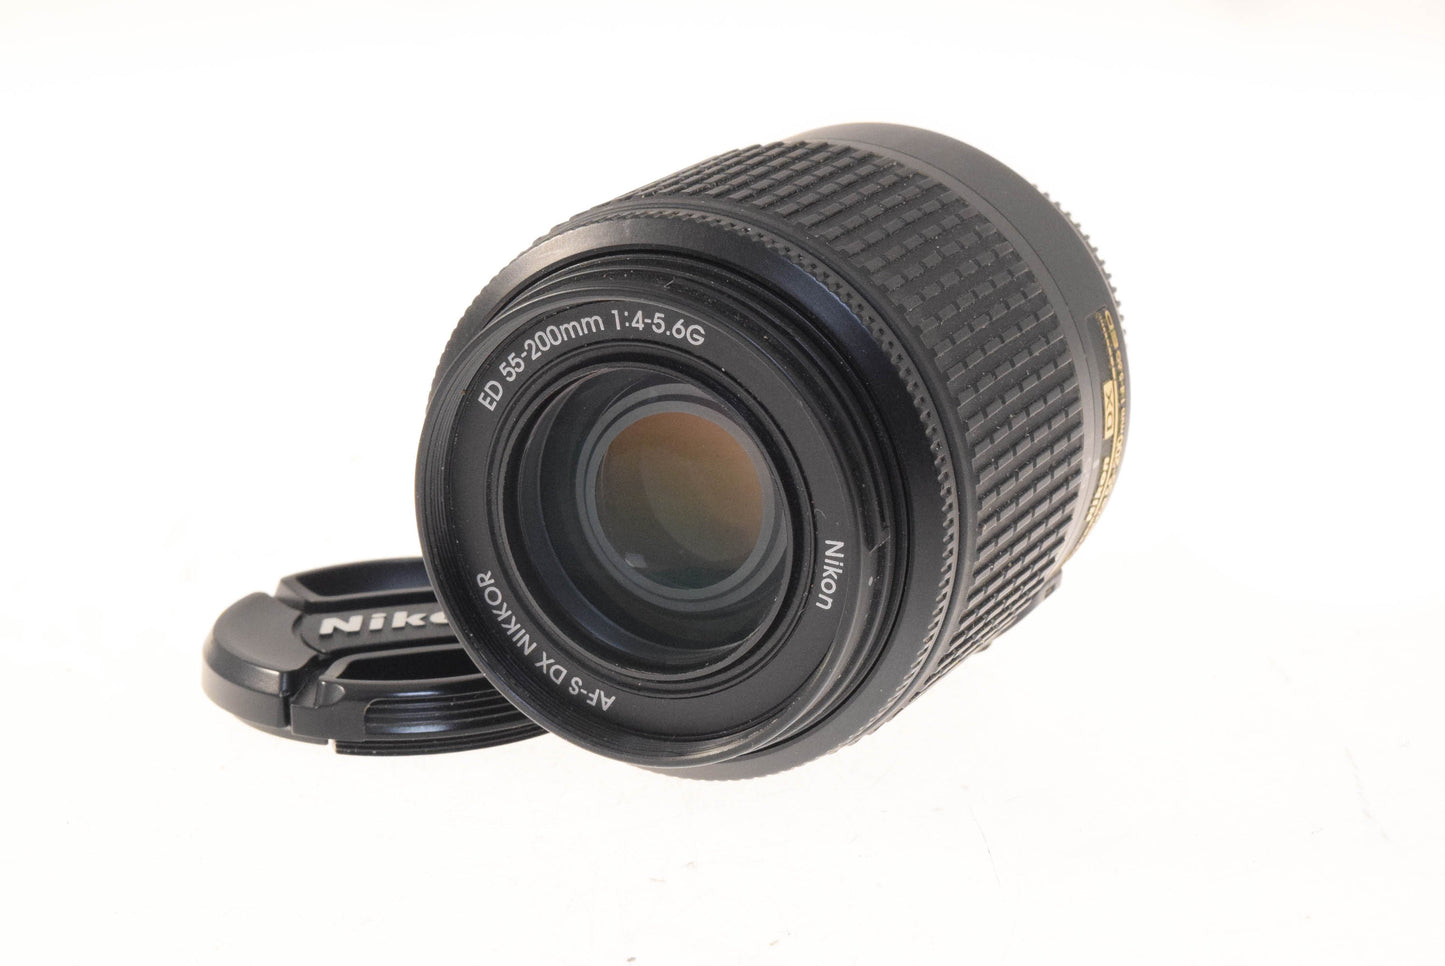 Nikon 55-200mm f4-5.6 AF-S Nikkor G ED